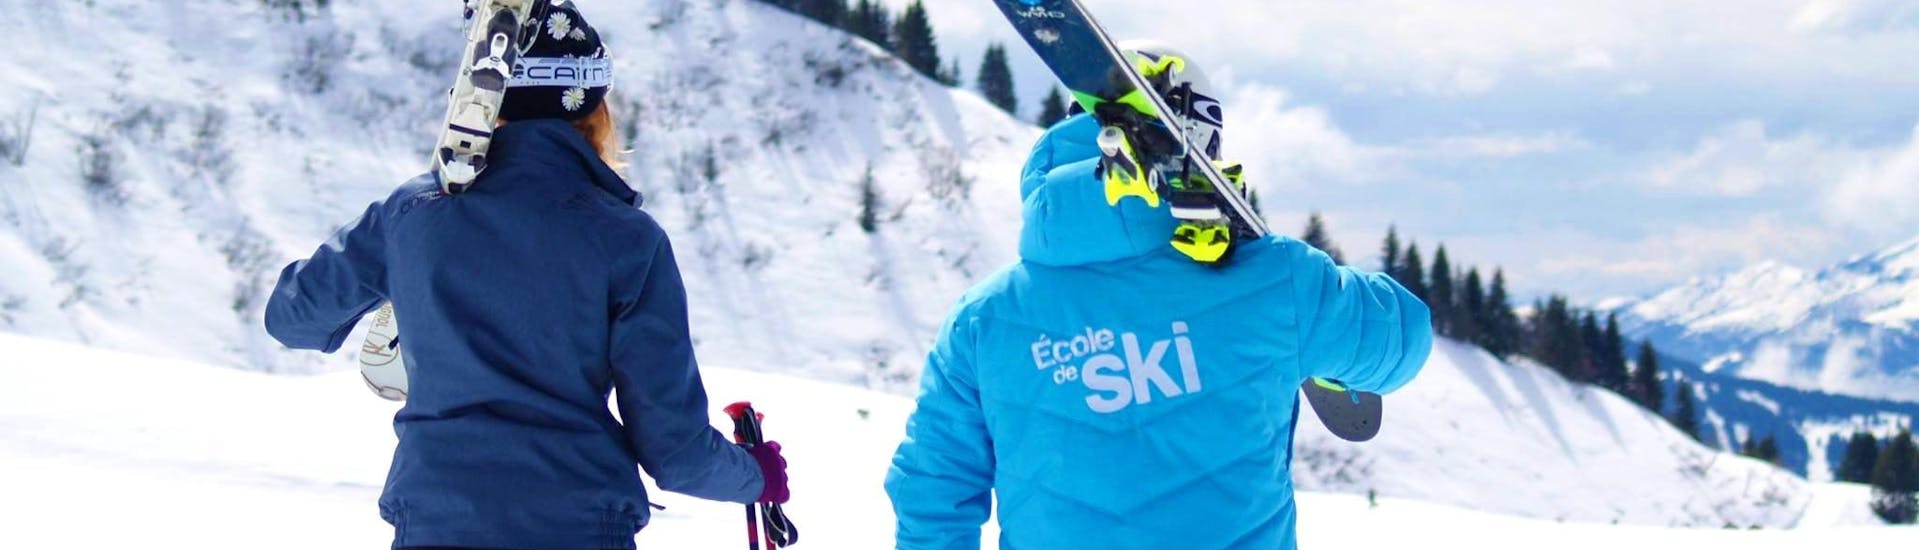 Imagen de Clases de esquí para adultos de todos los niveles con Ski School Easy2Ride Avoriaz.